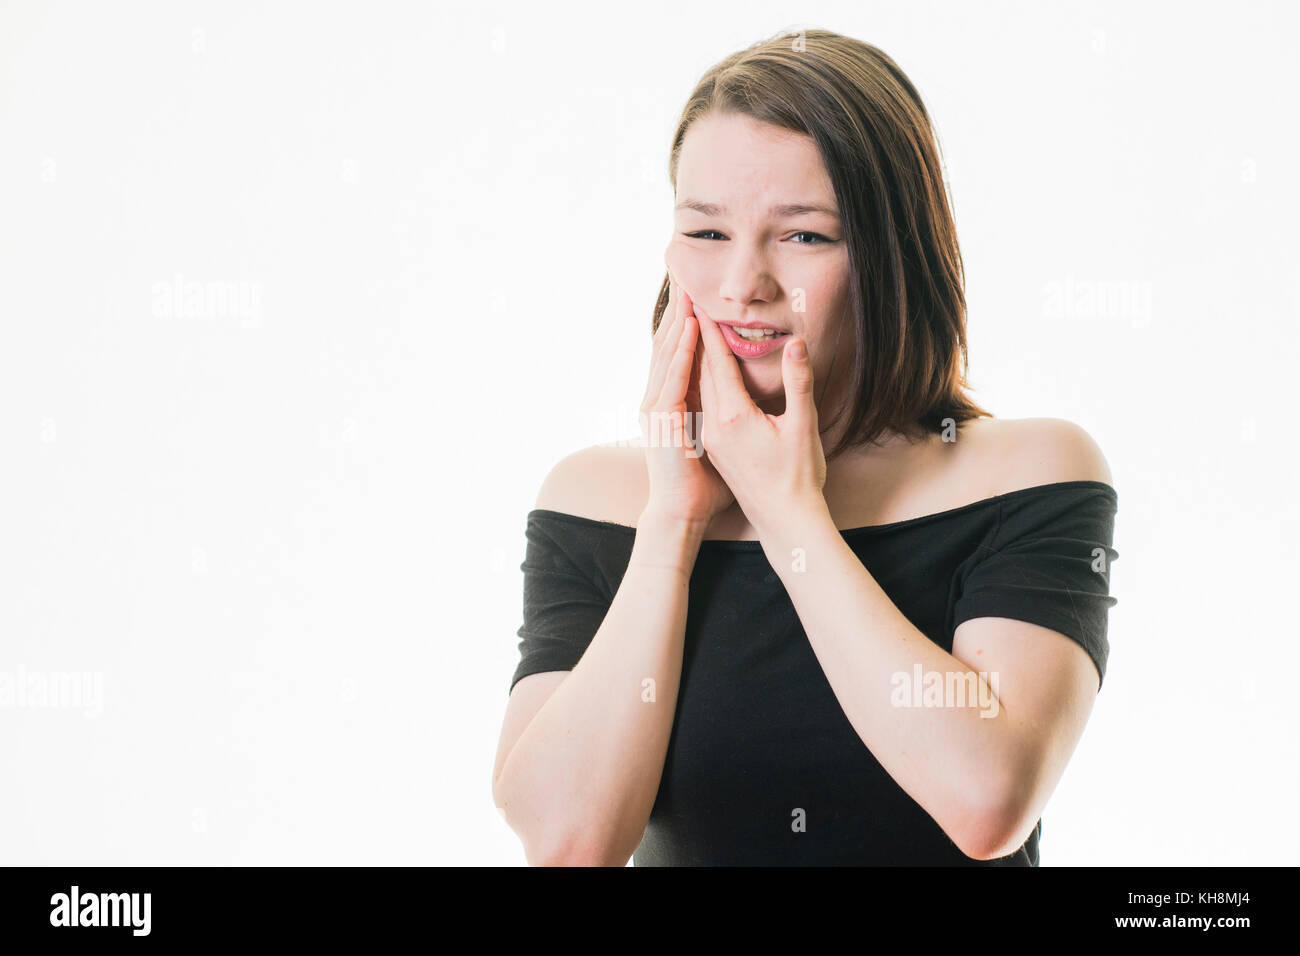 Karies und Zahnfleischerkrankungen in Großbritannien: Eine junge Braunhaarige kaukasischen Jugendmädchen Zahnschmerzen leiden, ihre Wange rieb mit der Hand Schmerzlinderung zu erhalten Stockfoto